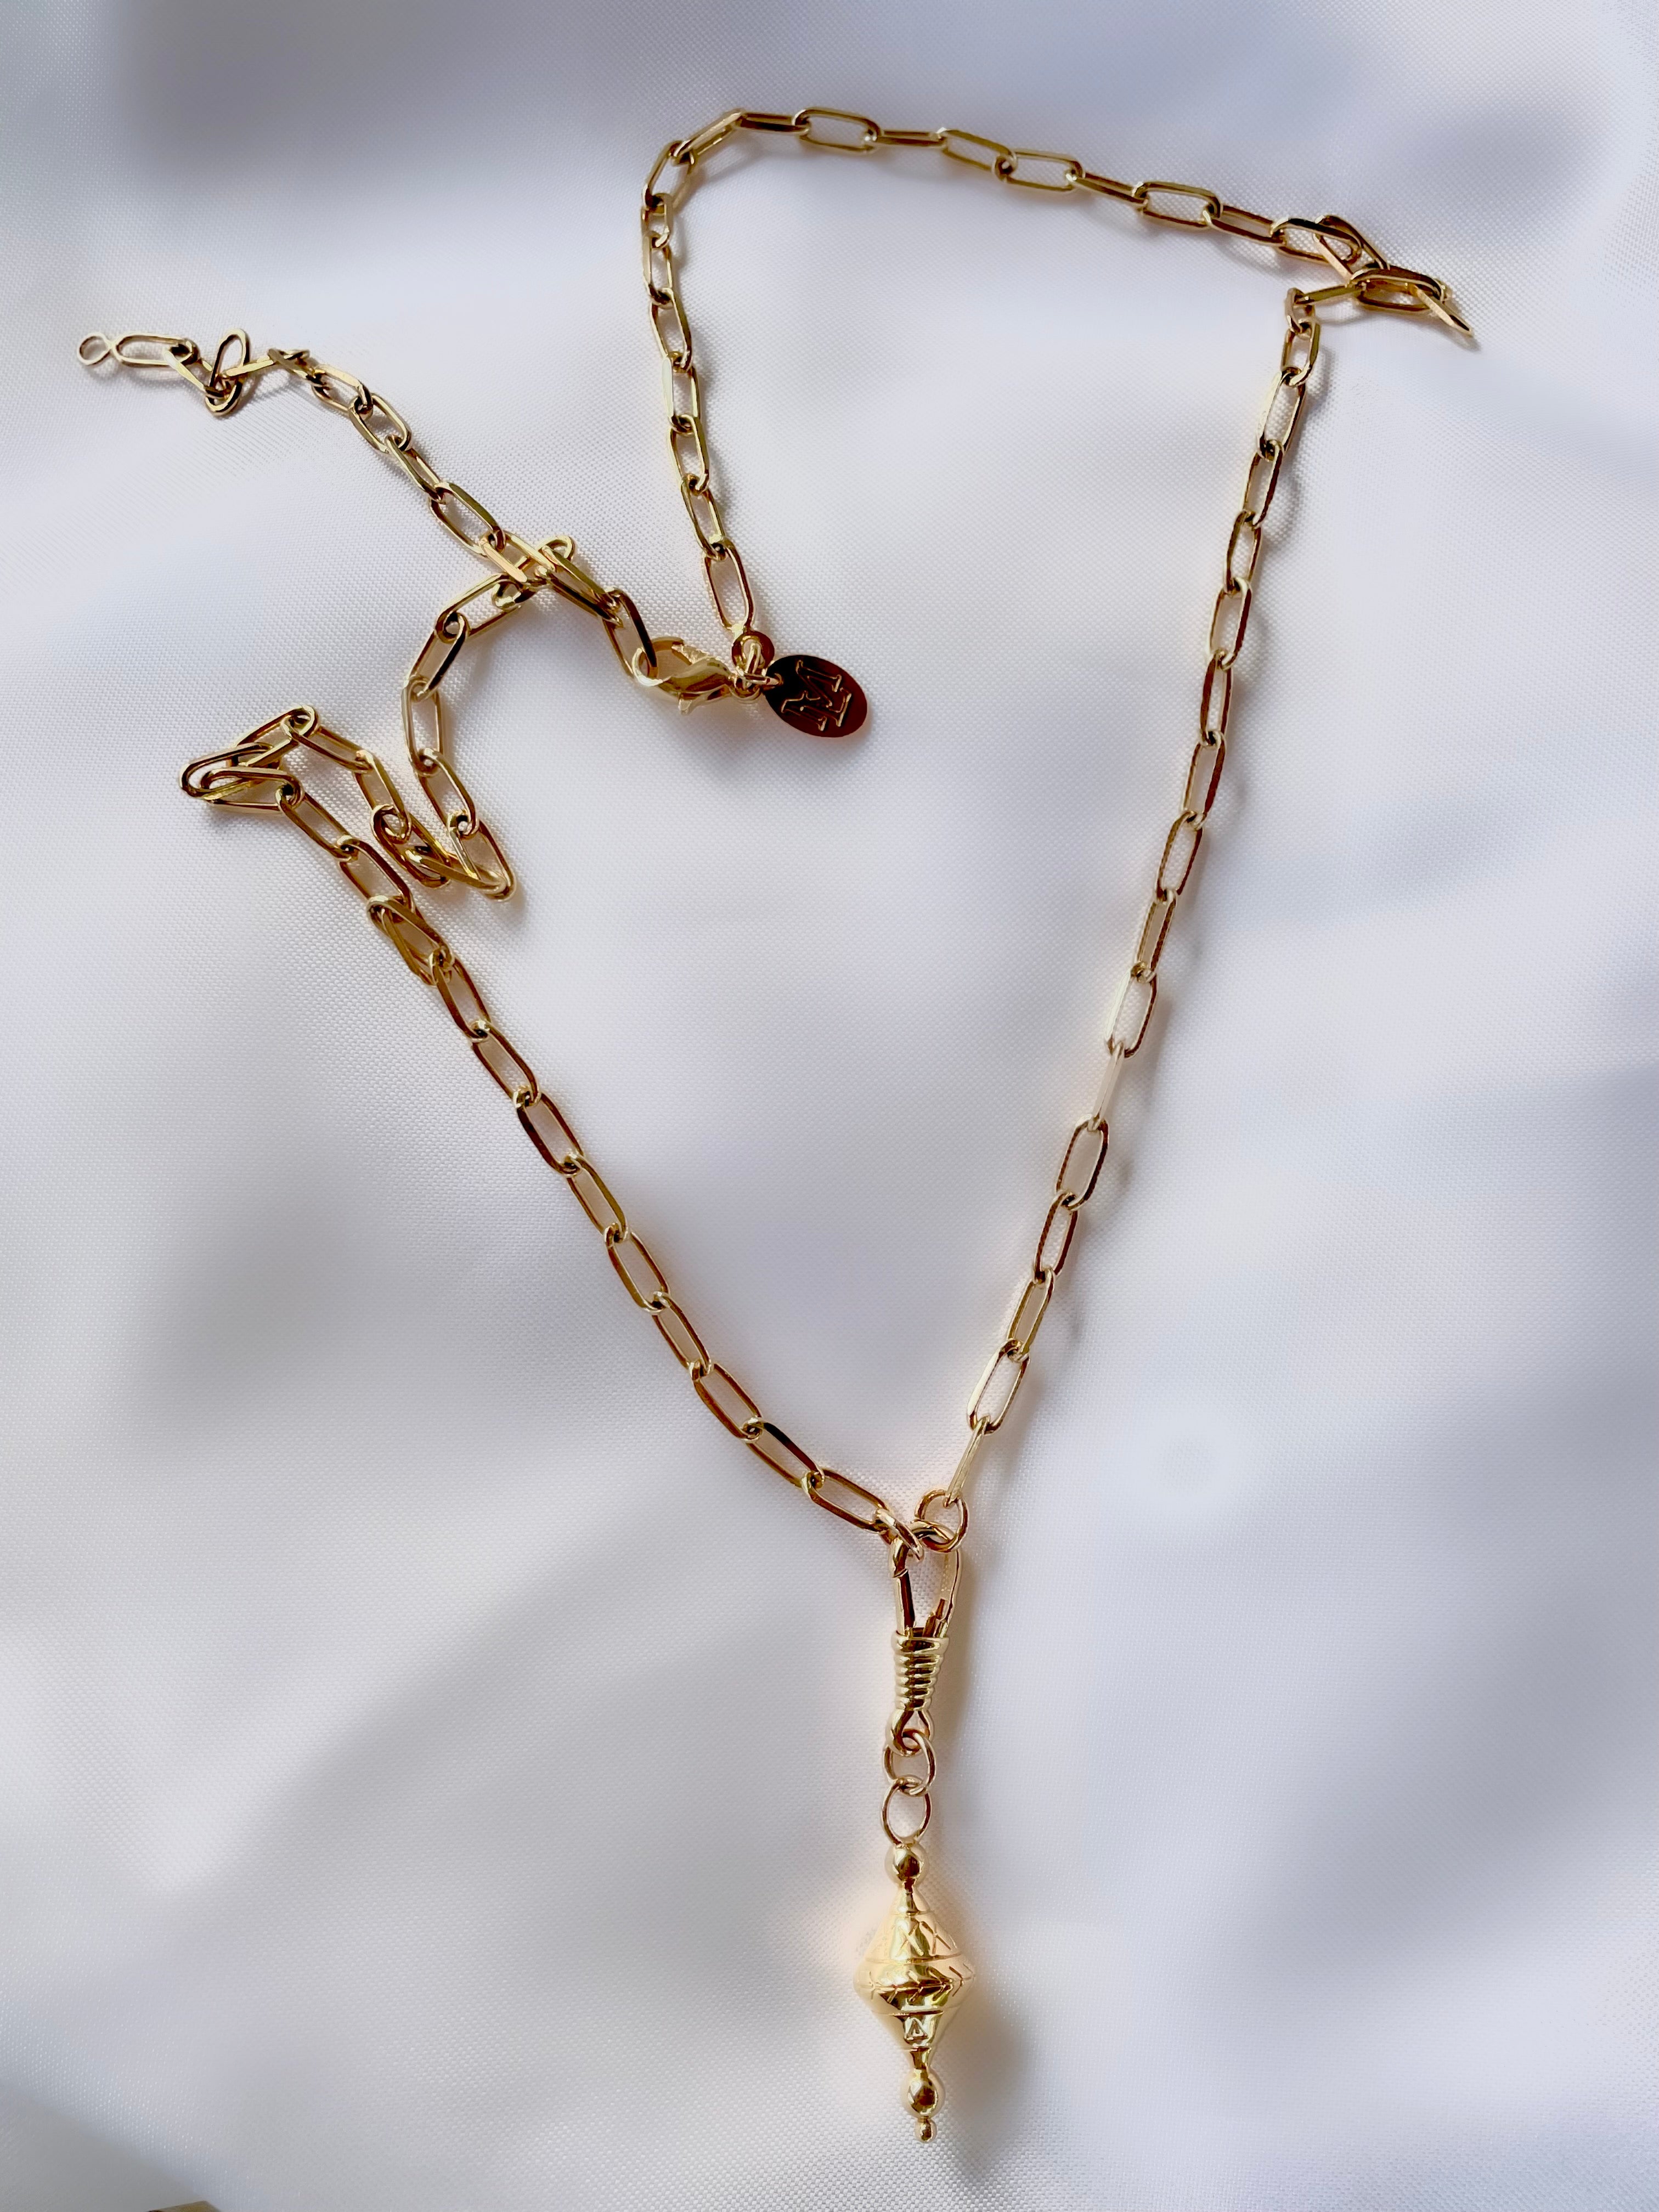 Le Marshand®  -  Joyería en plata 925, chapado en Oro 24K - Collar Cono Tibet Allure - Diseños propios - Brazaletes, pulseras, collares y pendientes - Joyería online - Mallorca